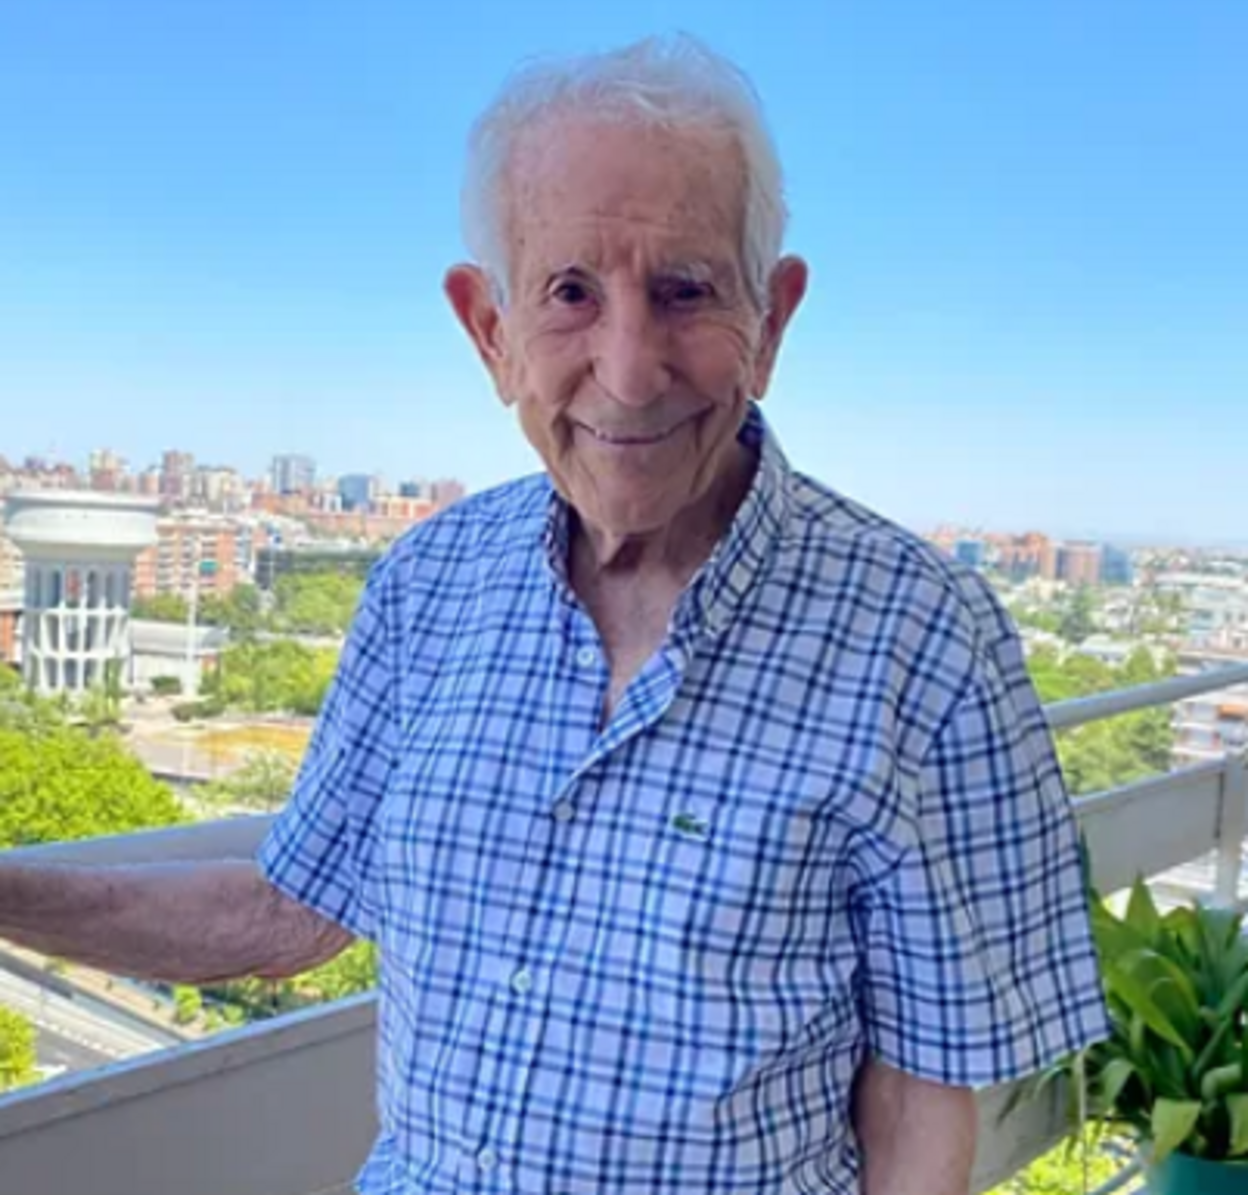 José María Abad triunfa en TikTok a los 90 años: "Los mayores podemos hacer cosas maravillosas" (SoyJoséAbad.com)